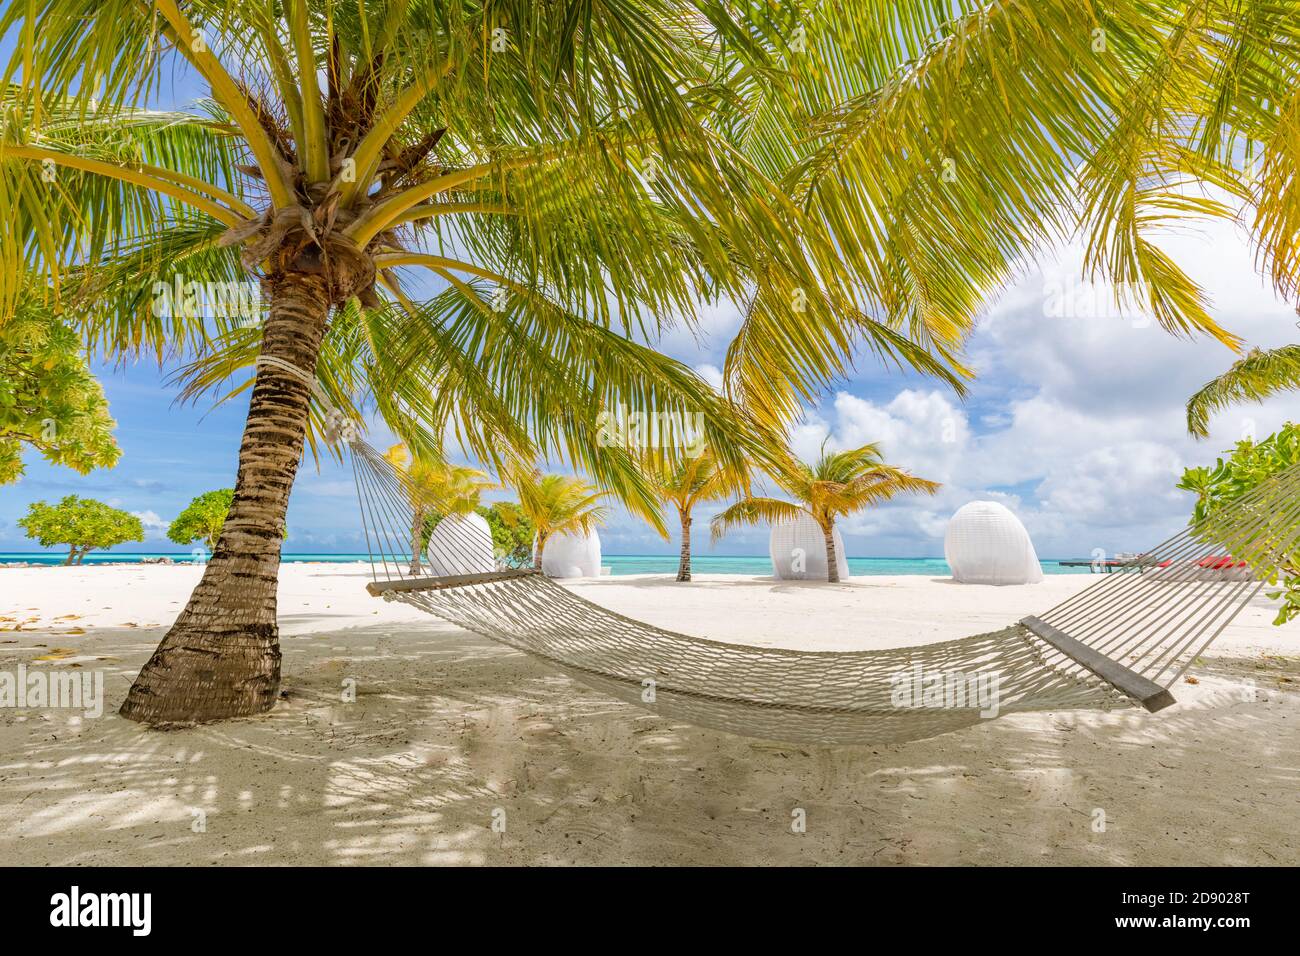 Strandhängematte zwischen Palmen wolkigen Himmel, Meer. Sonniger Paradiesstrand mit Palmen und traditioneller geflochtener Hängematte Stockfoto